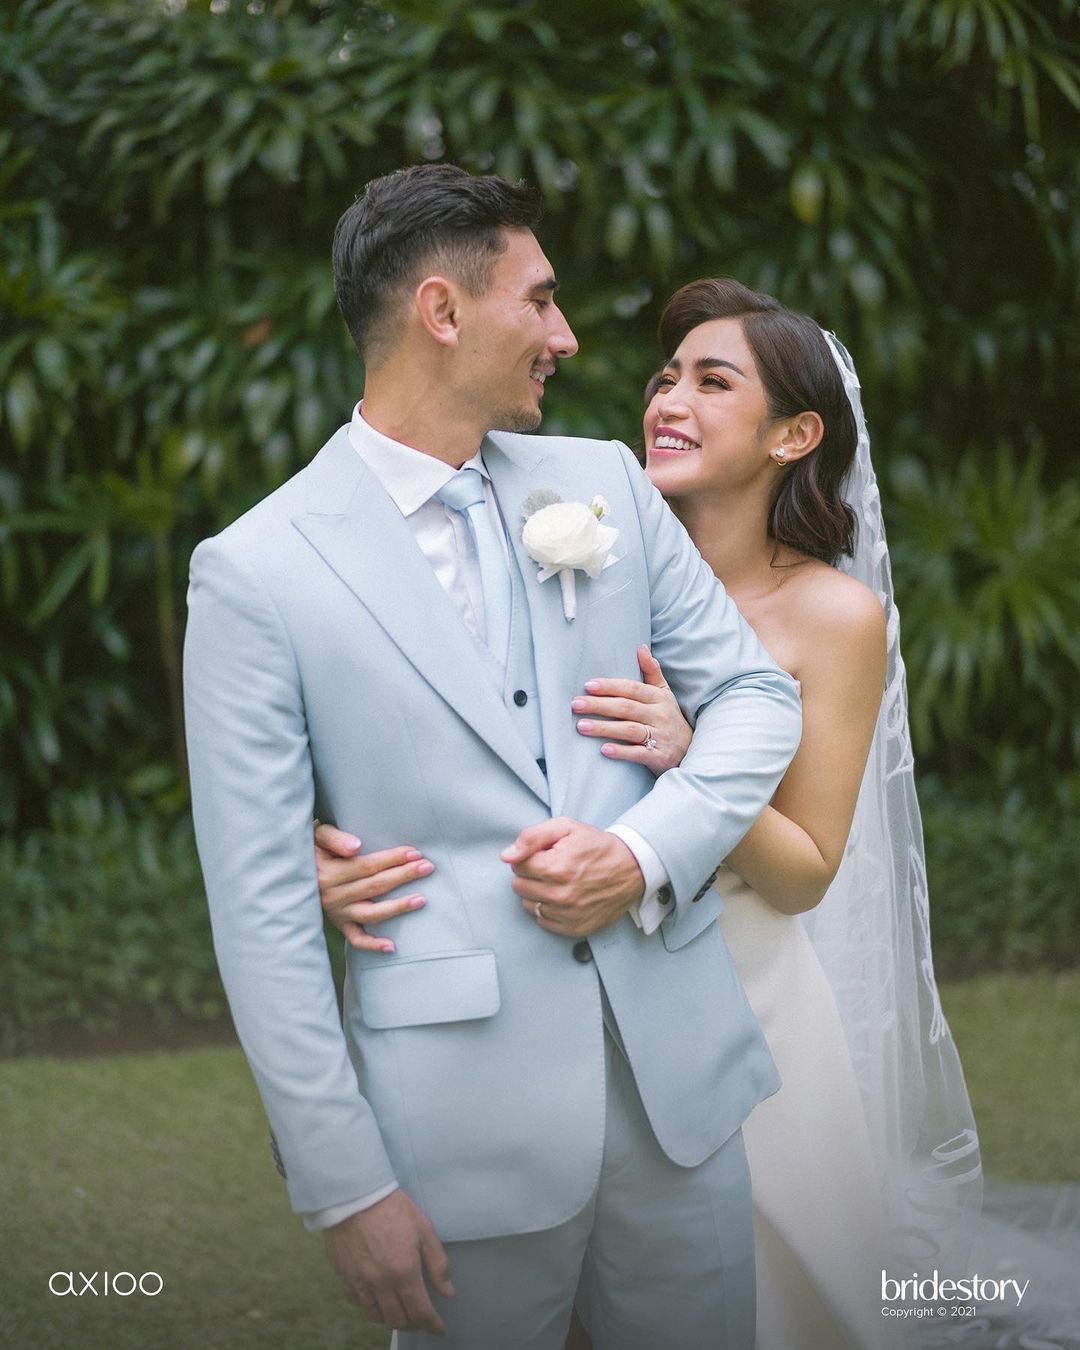 Jessica Iskandar dan Vincent Verhaag menikah